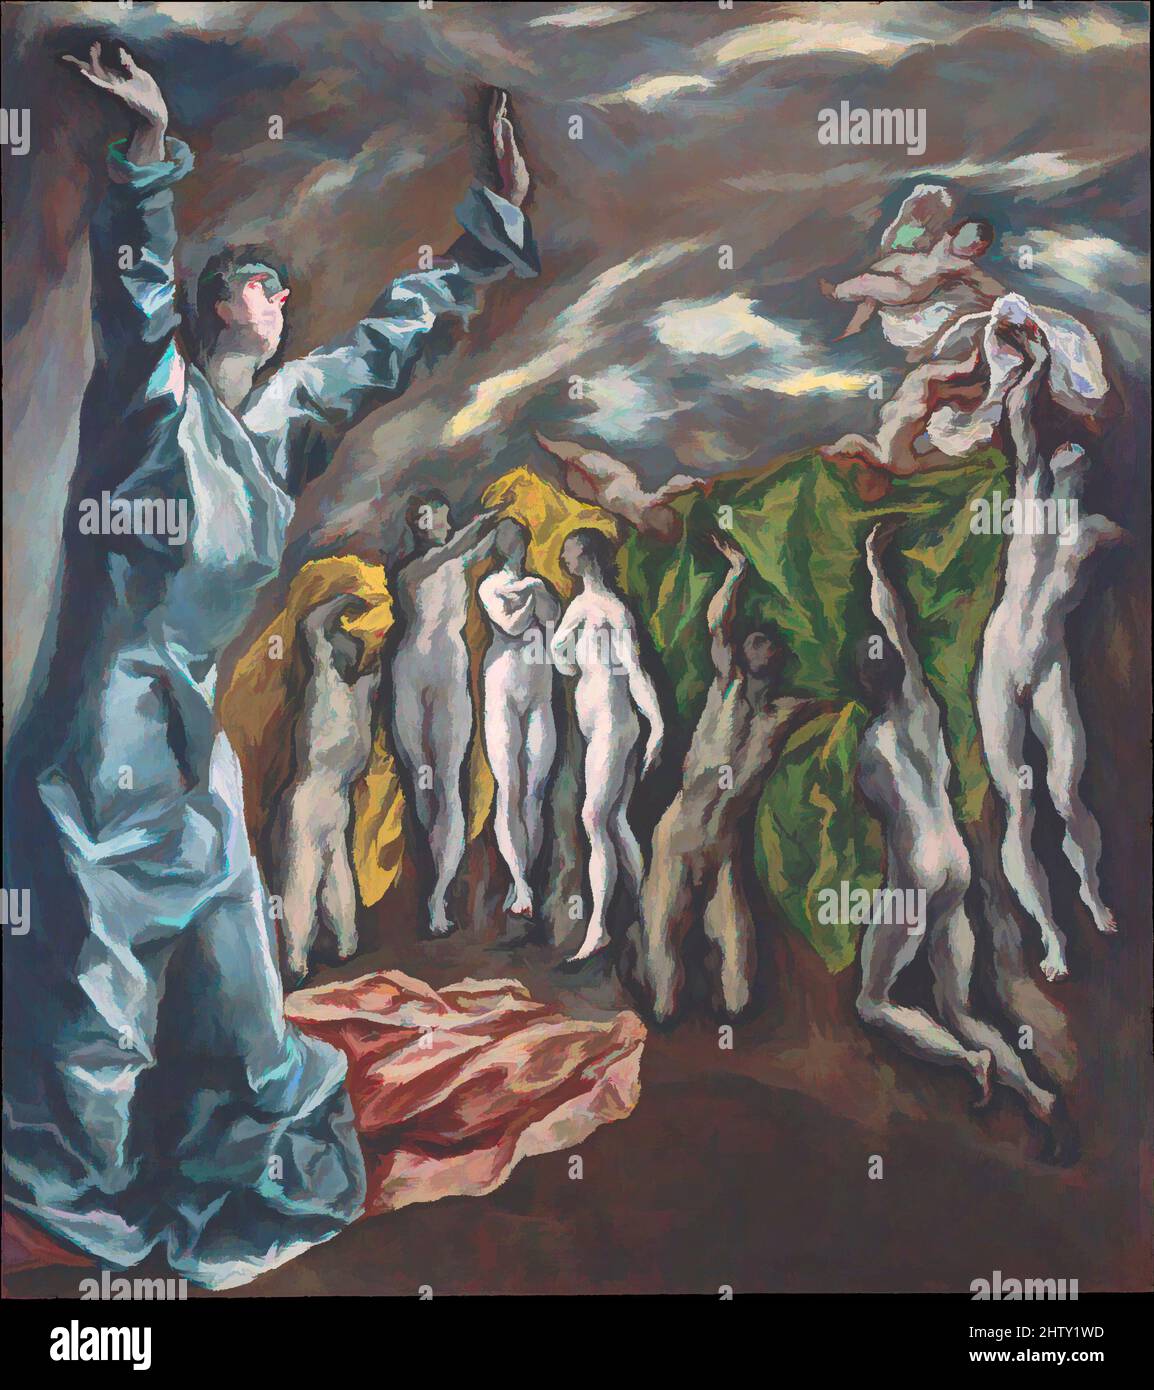 Art inspiré par la vision de Saint John, ca. 1609–14, huile sur toile, 87 1/2 x 76in. (222,3 x 193cm) ; avec bandes de 88 1/2 x 78 1/2 po (224,8 x 199,4 cm) haut tronqué, peintures, El Greco (Domenikos Theotokopoulos) (grec, Iráklion (Candia) 1540/41–1614 Toledo), la peinture est un, des œuvres classiques modernisées par Artotop avec une touche de modernité. Formes, couleur et valeur, impact visuel accrocheur sur l'art émotions par la liberté d'œuvres d'art d'une manière contemporaine. Un message intemporel qui cherche une nouvelle direction créative. Artistes qui se tournent vers le support numérique et créent le NFT Artotop Banque D'Images